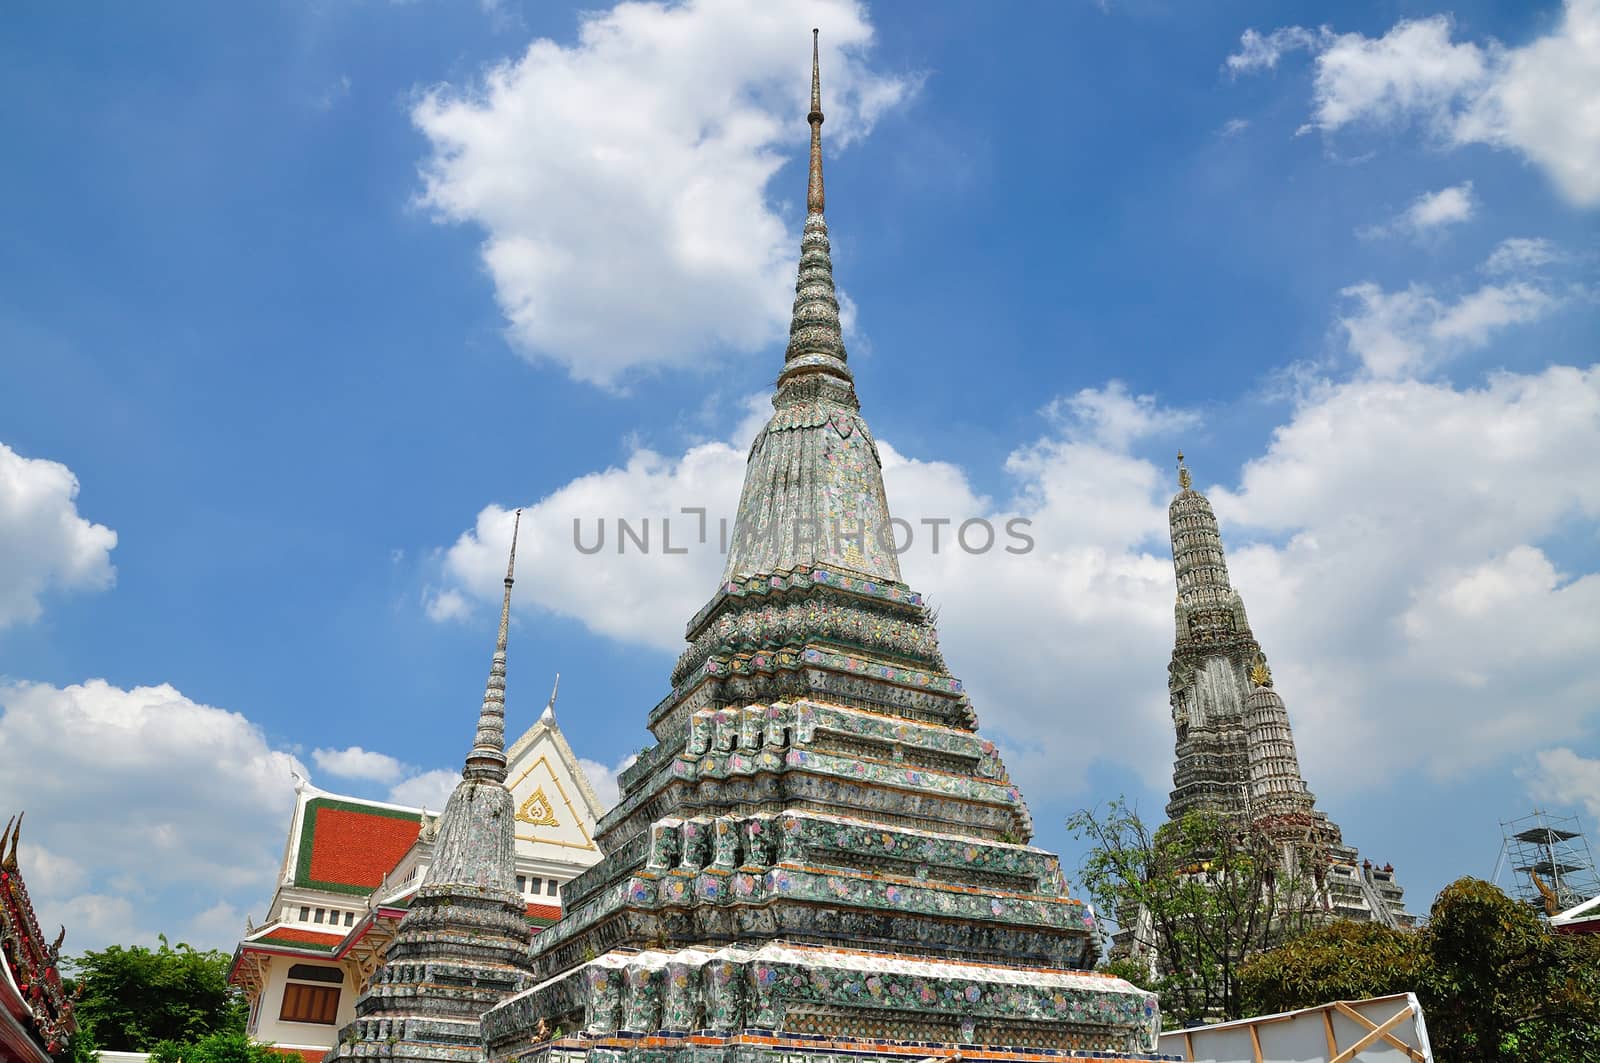 Ancient Pagoda or Chedi at Wat Arun Rachawararam Mahawiharn or Wat Jaeng in Bangkok, Thailand 